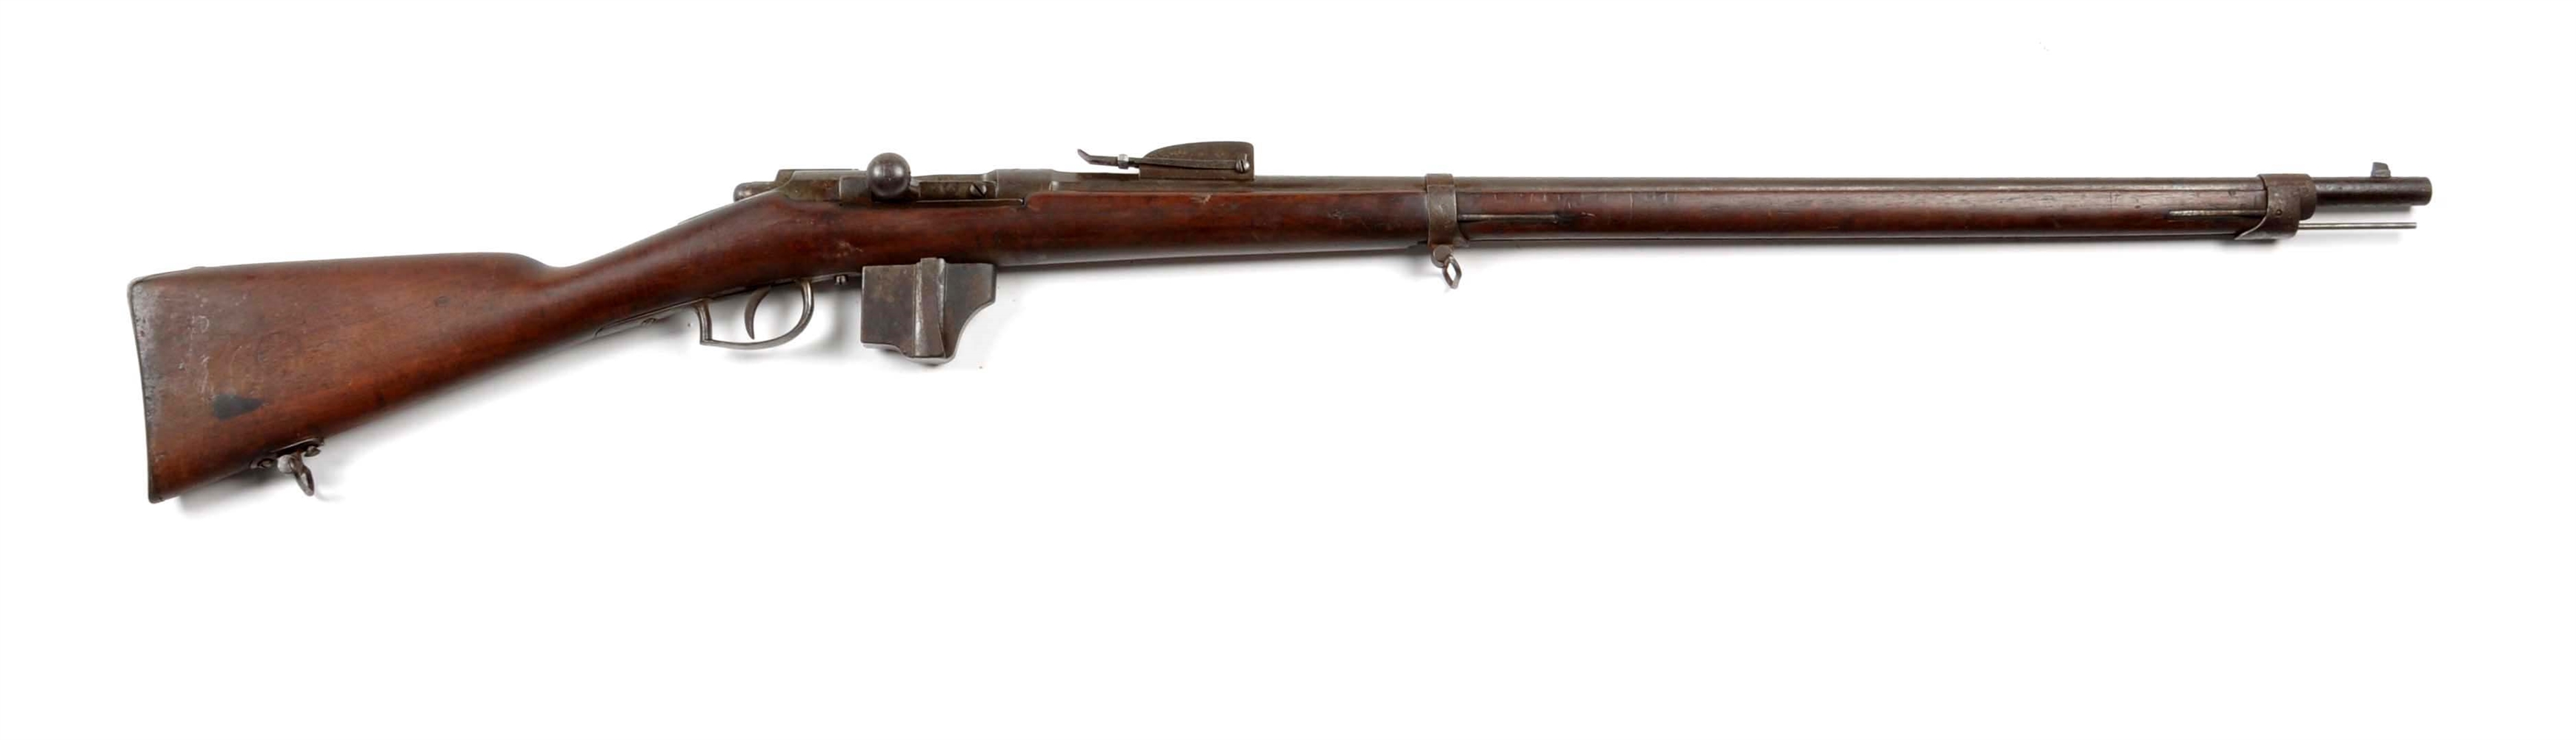 A) model 1871 beaumont bolt action rifle. 